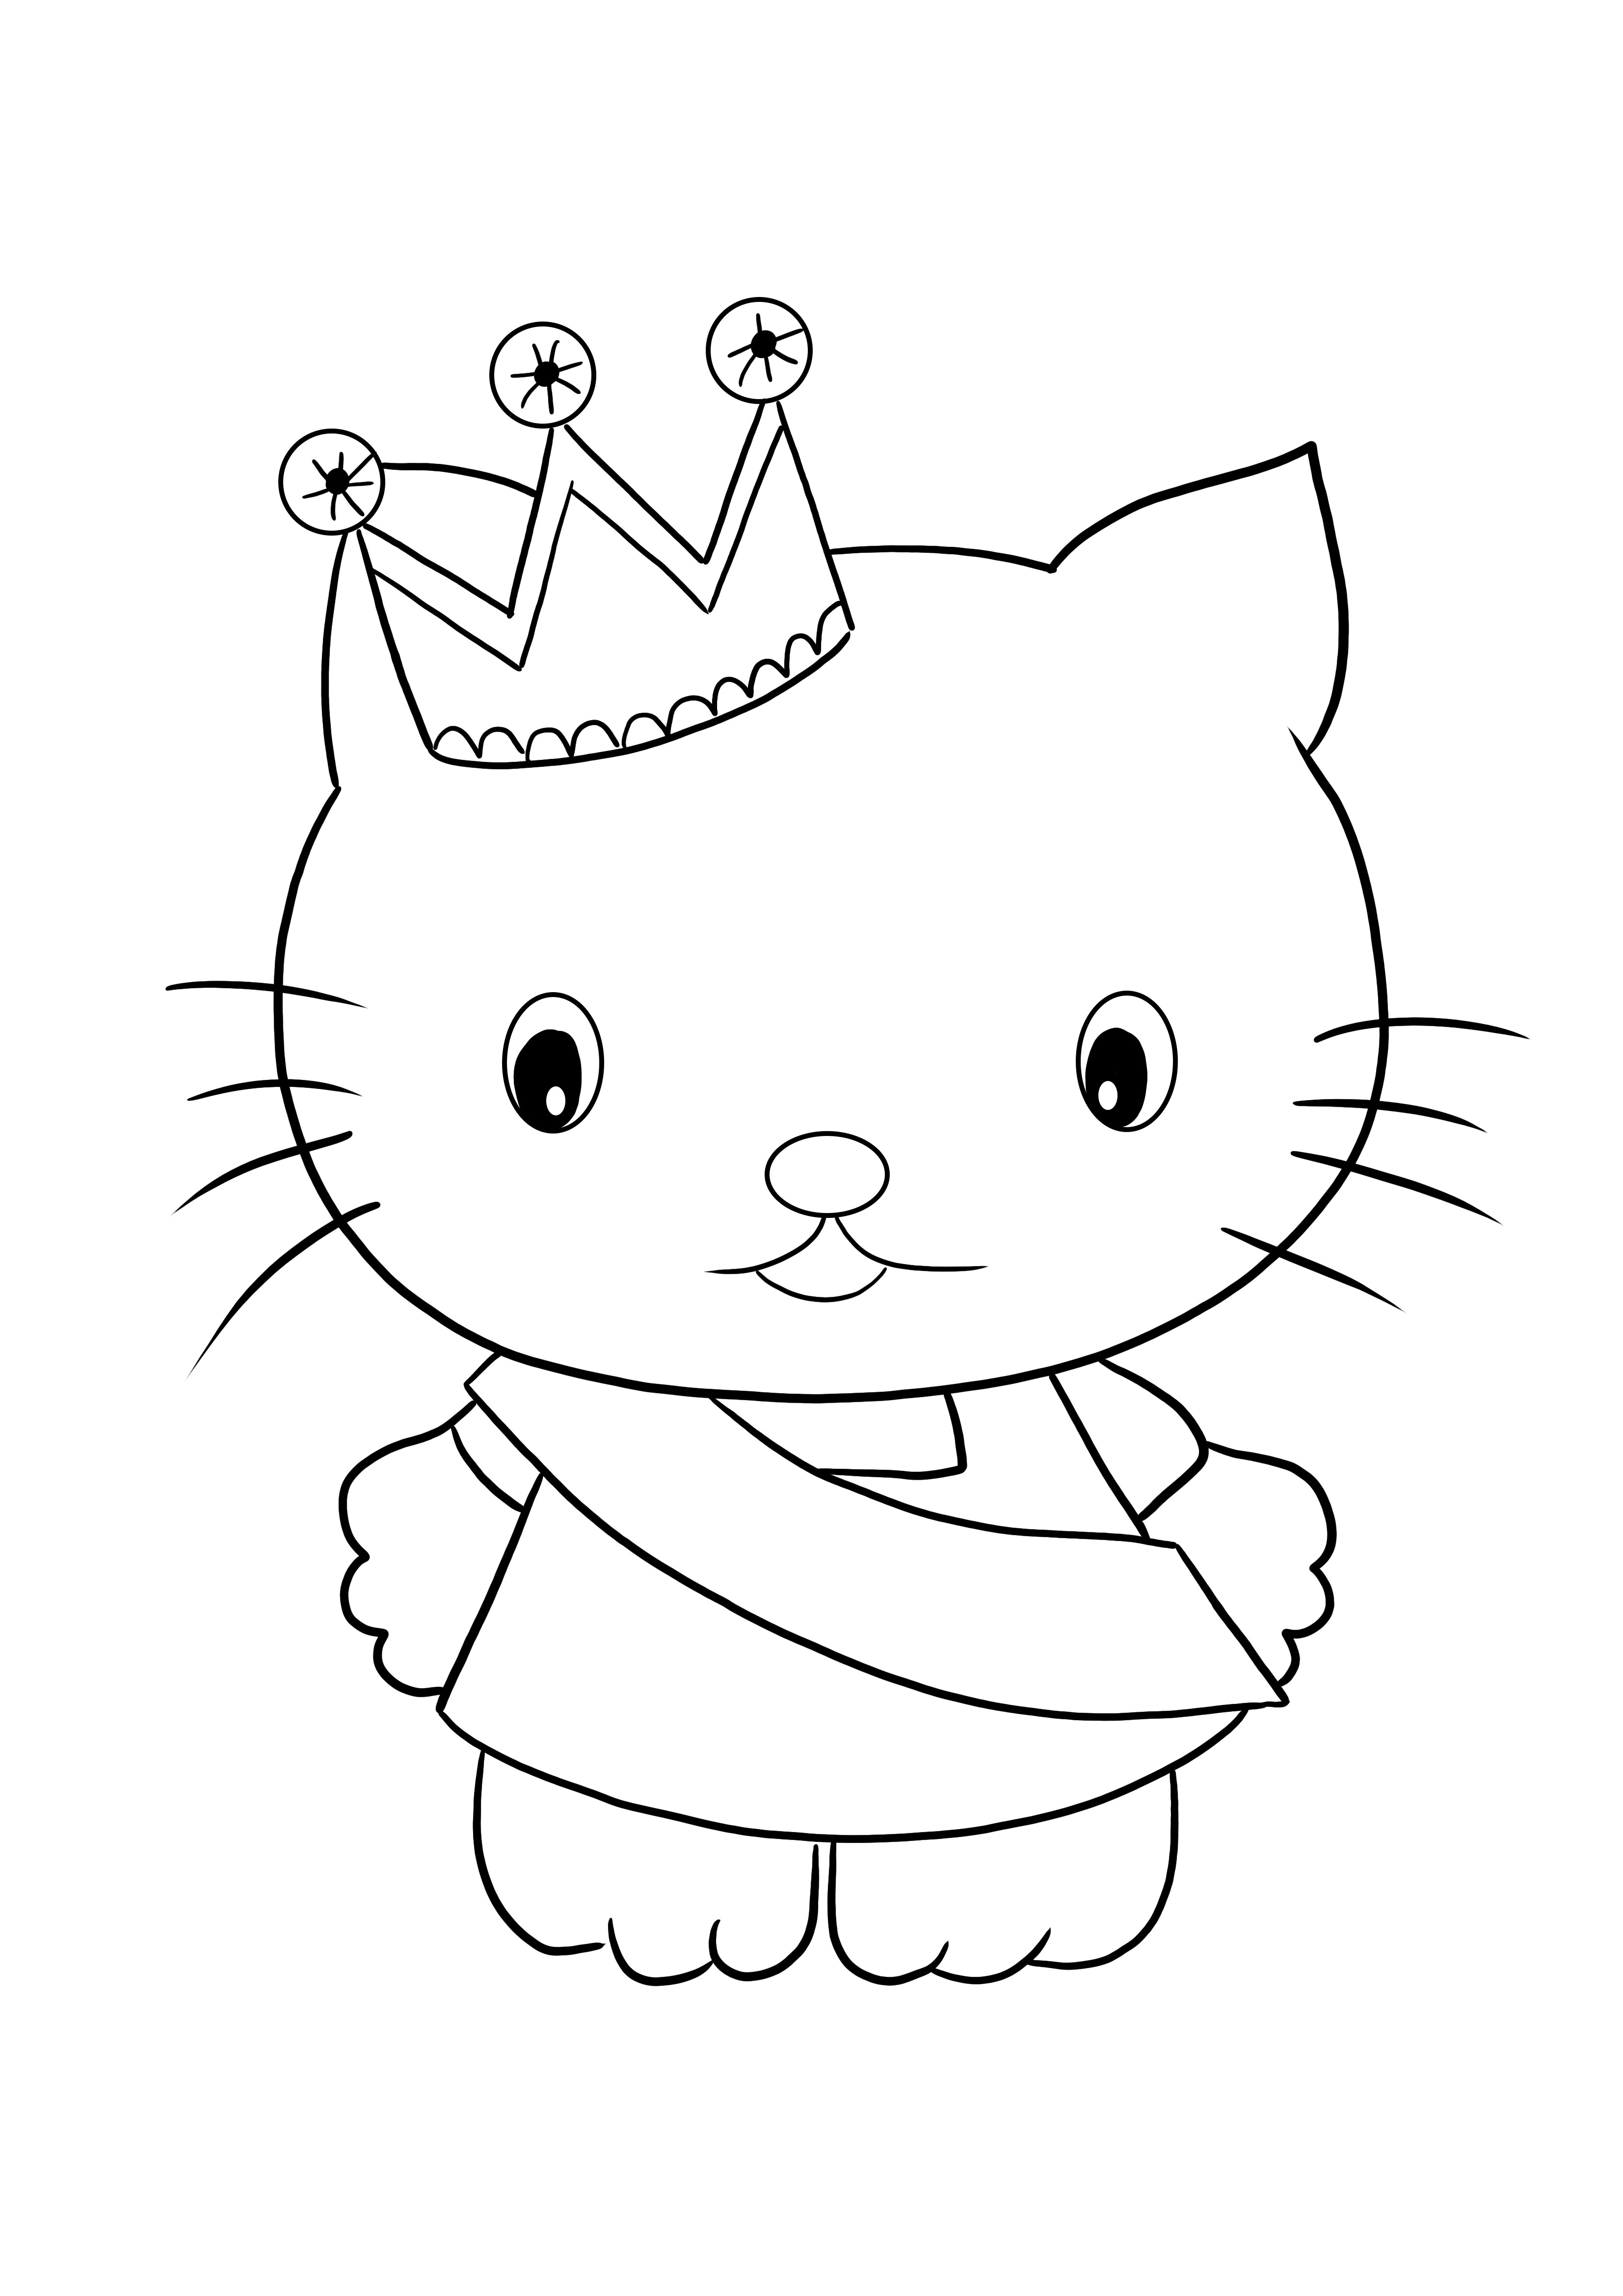 Ilmainen Hello Kitty Princess -värjäysarkin tulostus värjäämään ja pitämään hauskaa